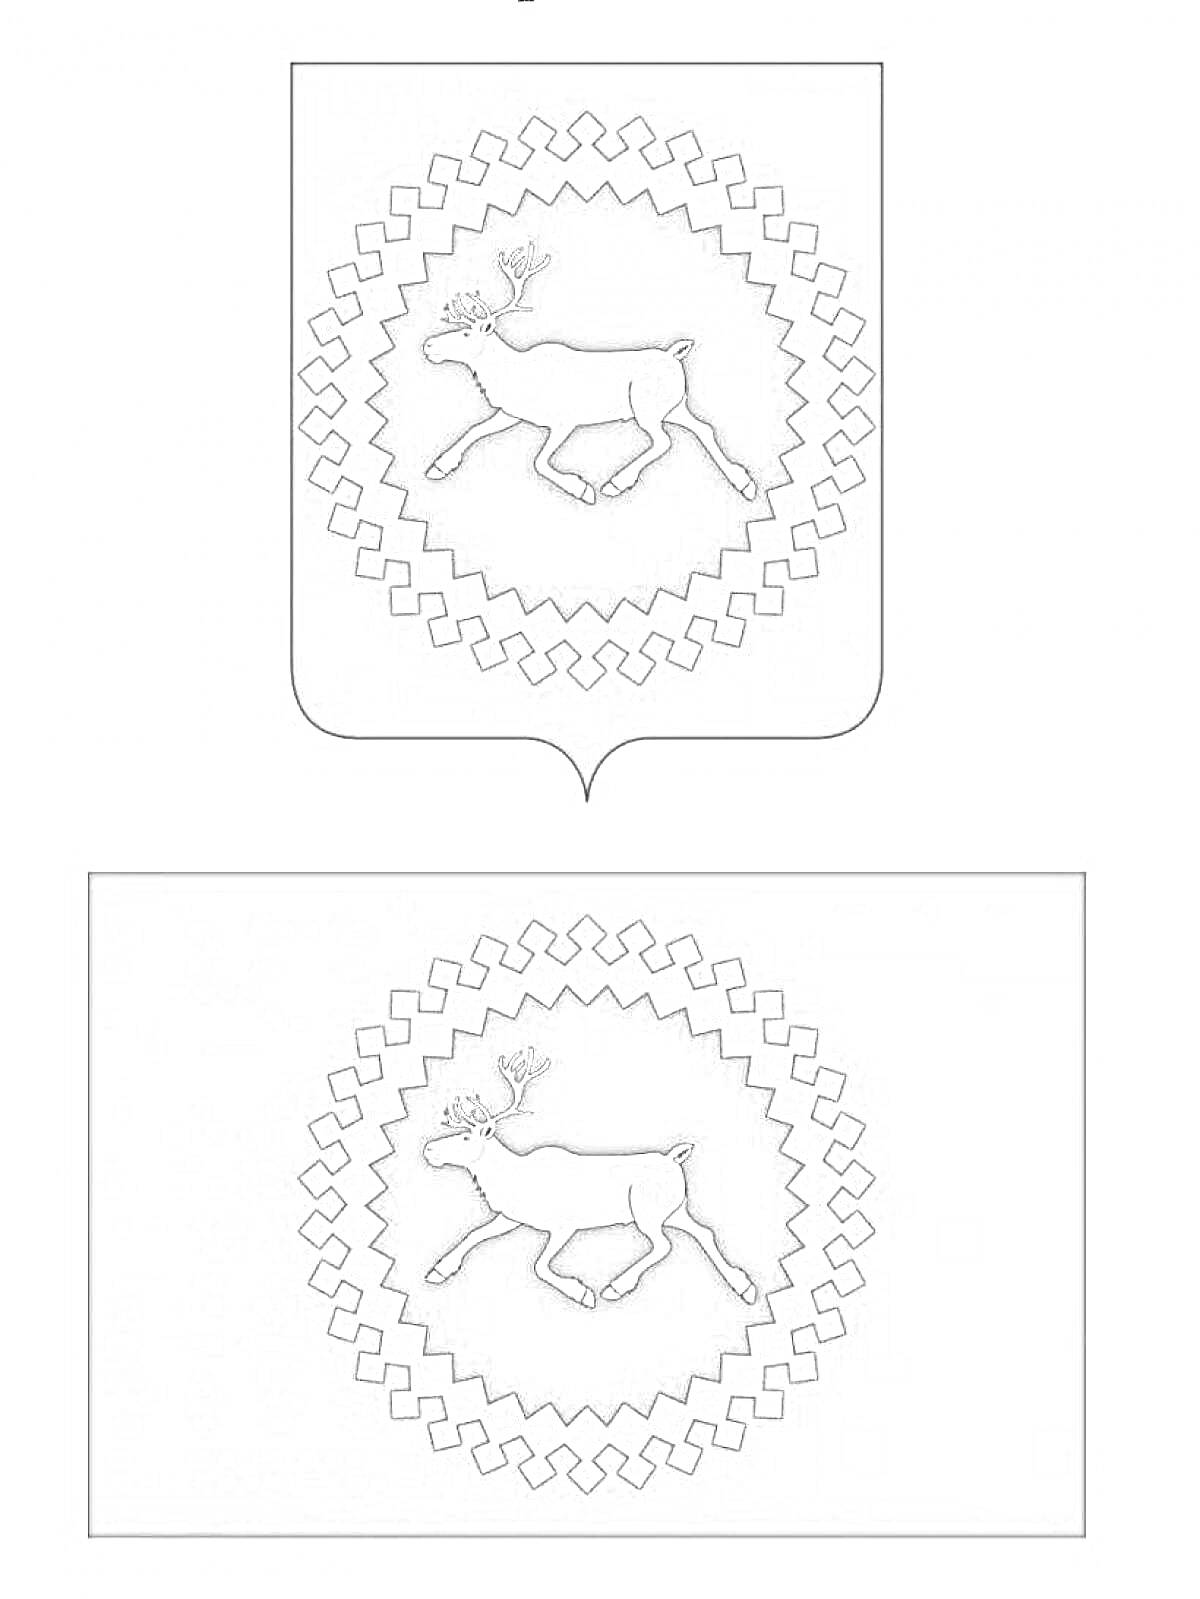 Раскраска Герб и флаг Республики Коми - белый олень на фоне ромбов и звёзд